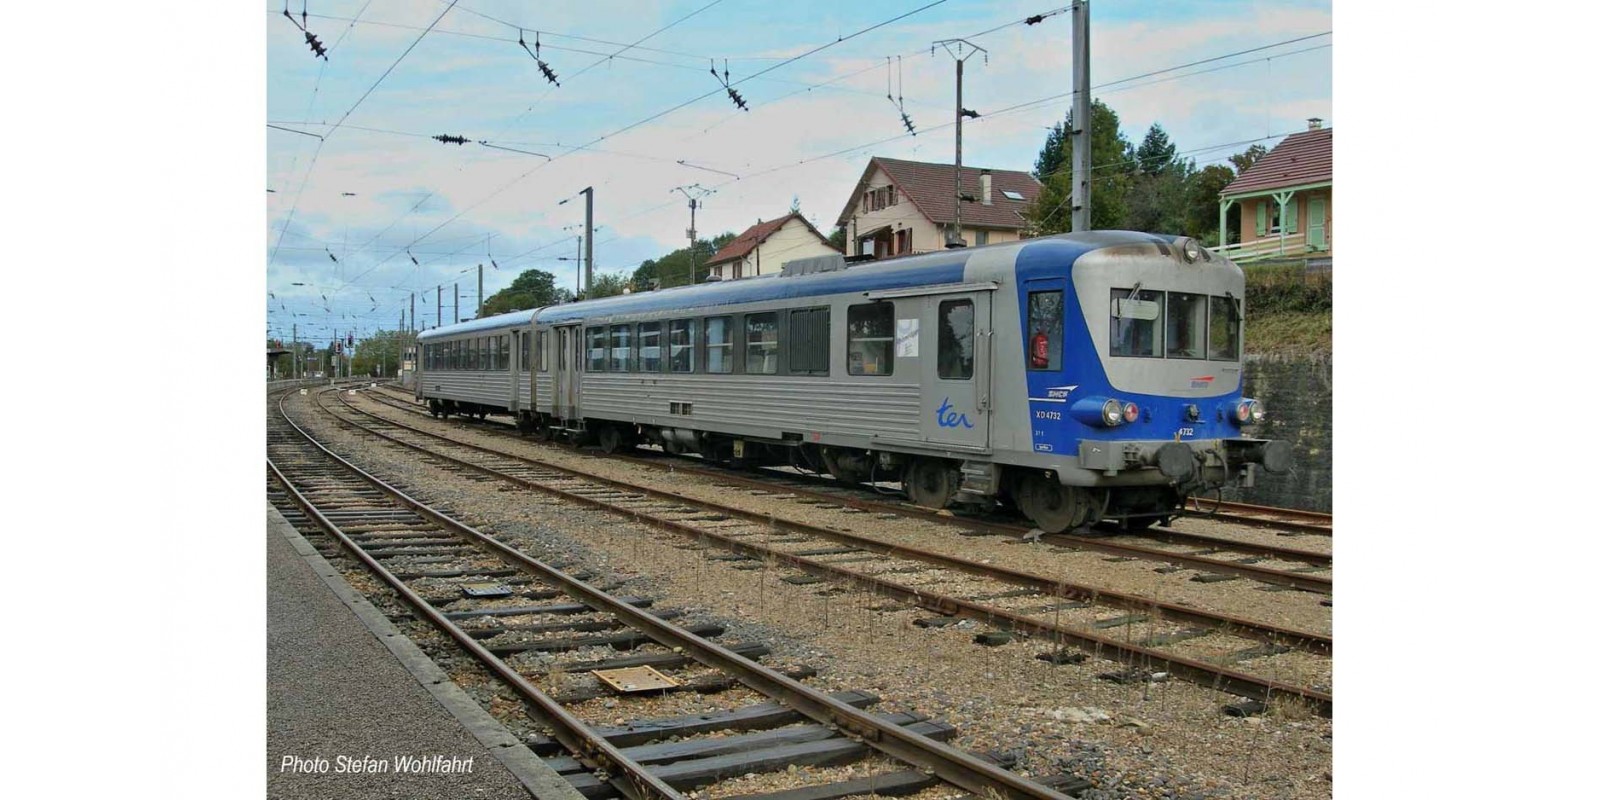 JO2612 SNCF, 2-unit railcar EAD X 4500, blue/silver livery, period V-VI